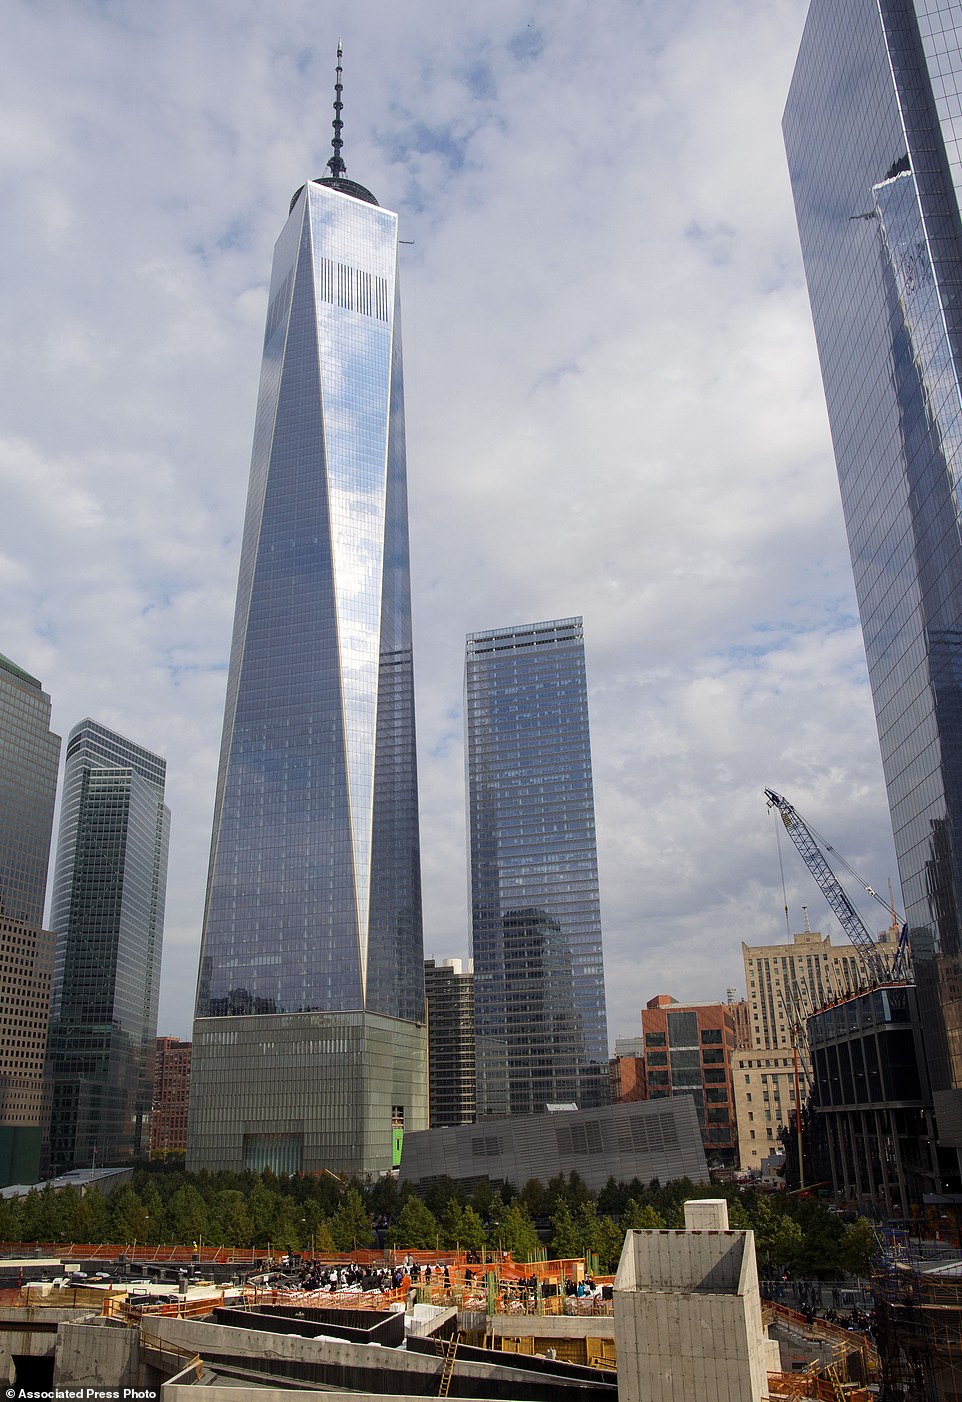 還記得發生在2001年的911恐怖攻擊事件嗎？那時候紐約世貿中心 (World Trade Center) 被恐怖分子狹持的飛機撞毀倒塌，造成了超過2,700人死亡，深埋在瓦礫碎片當中，讓全球關注的人無不悲痛萬分。